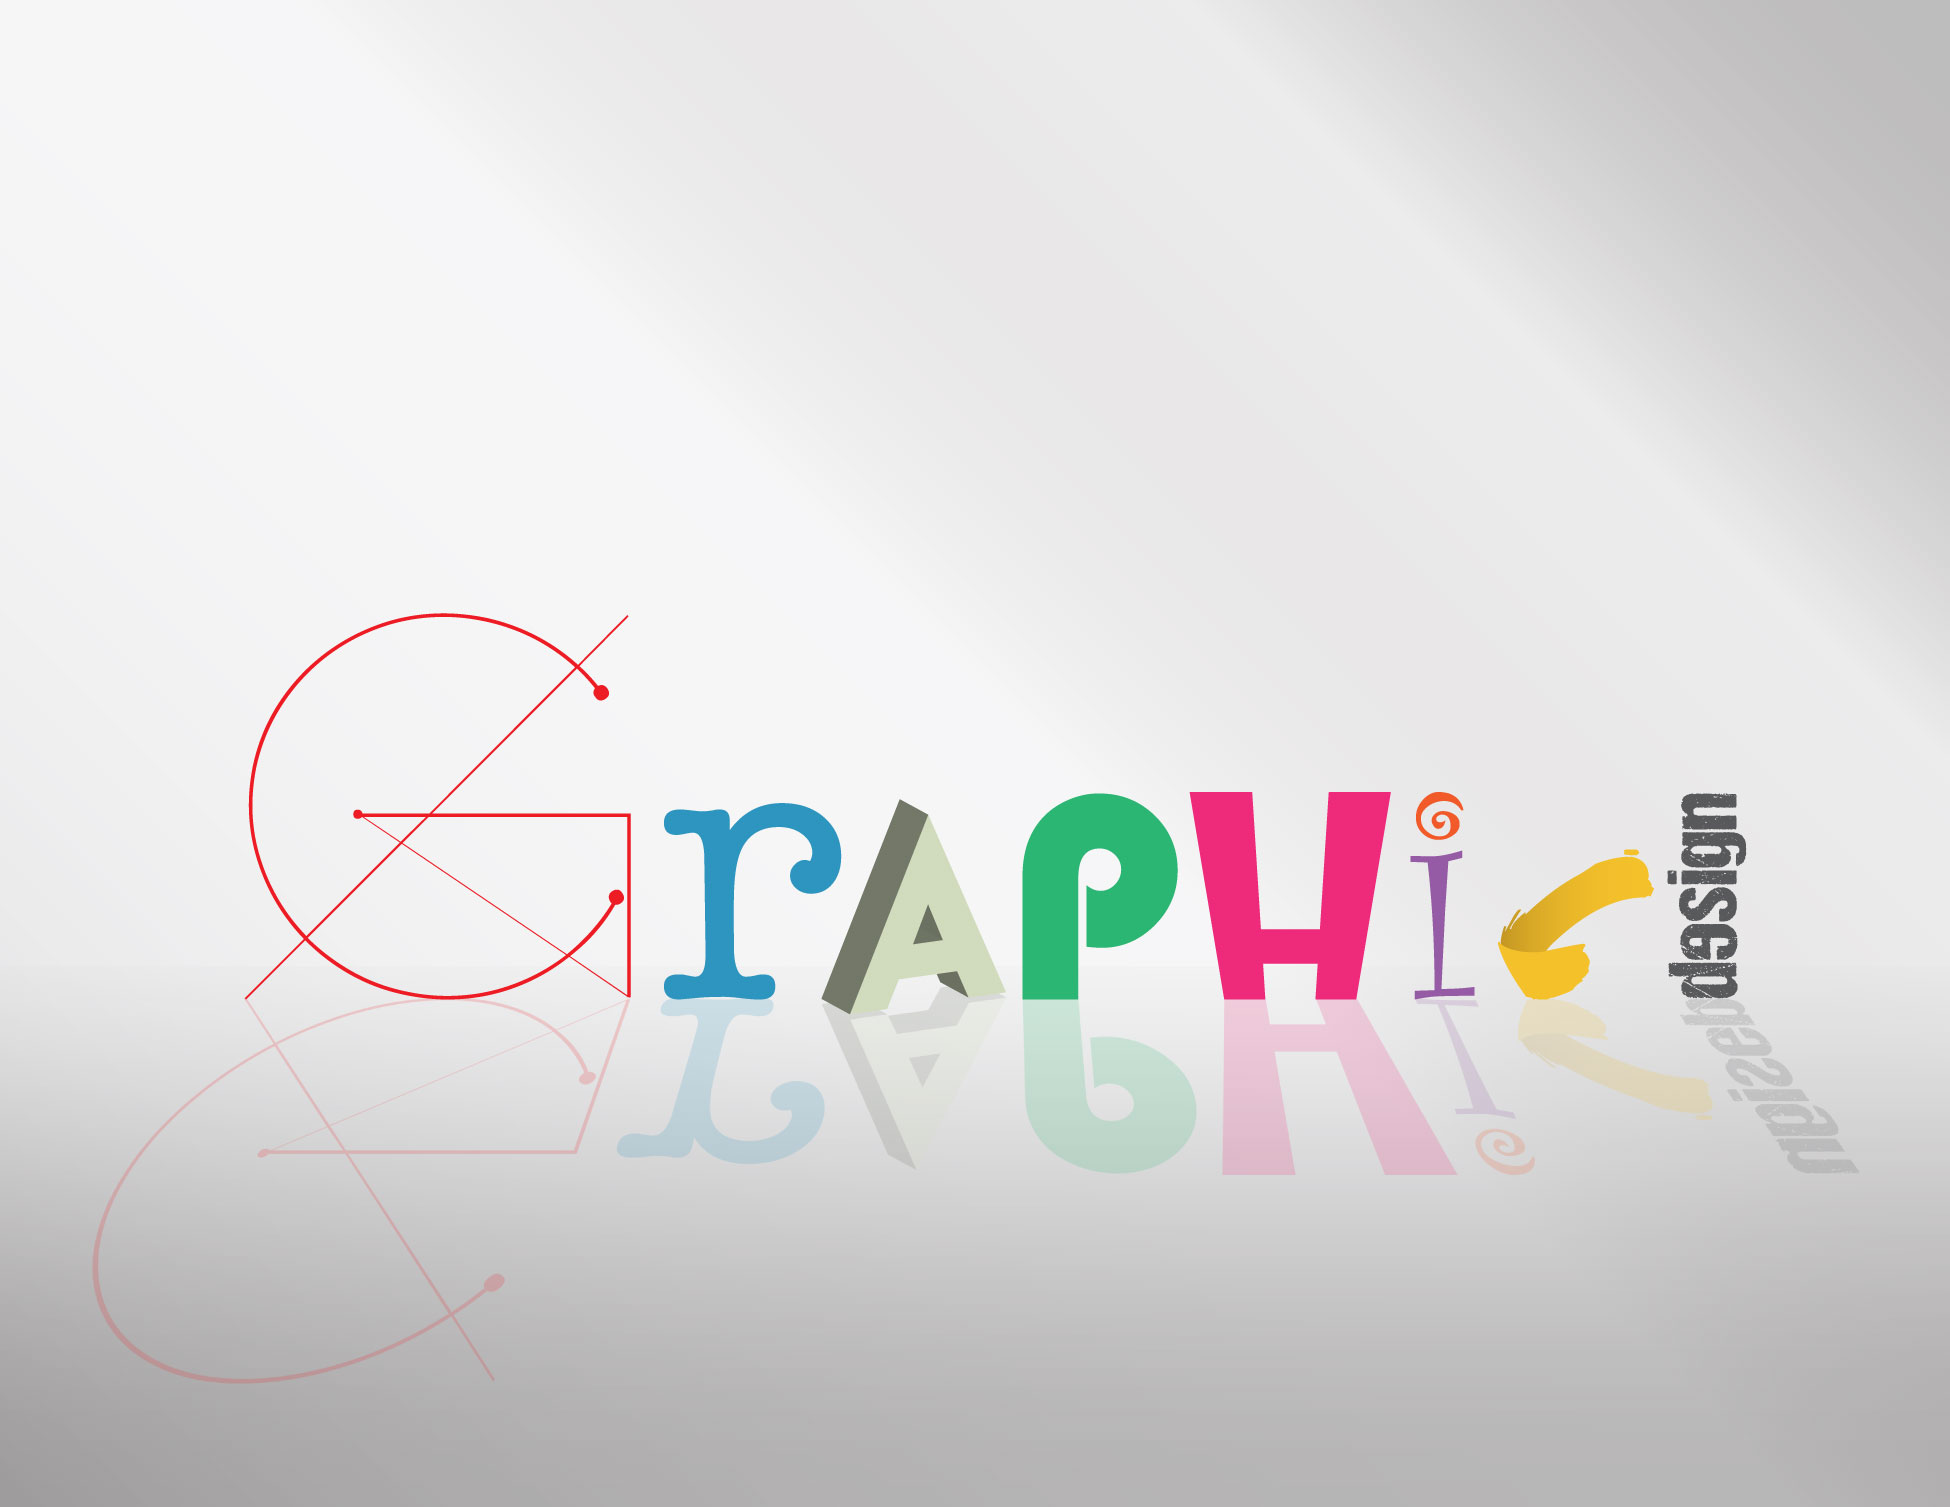 k-adesigns_graphic_design